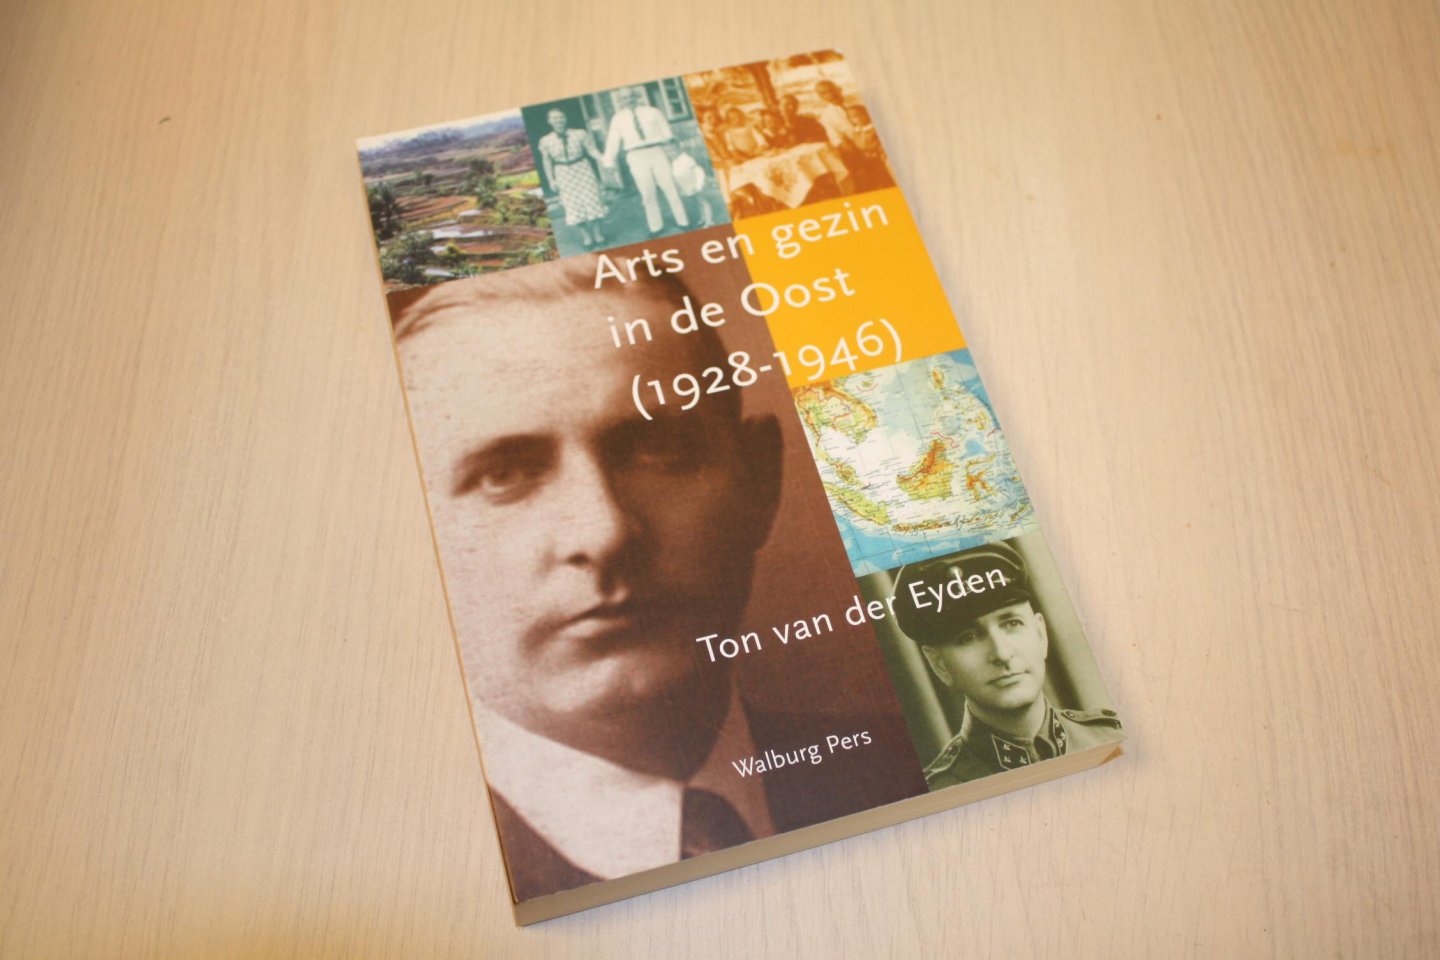 Eyden, Ton van der - Arts en gezin in de Oost (1928-1946)